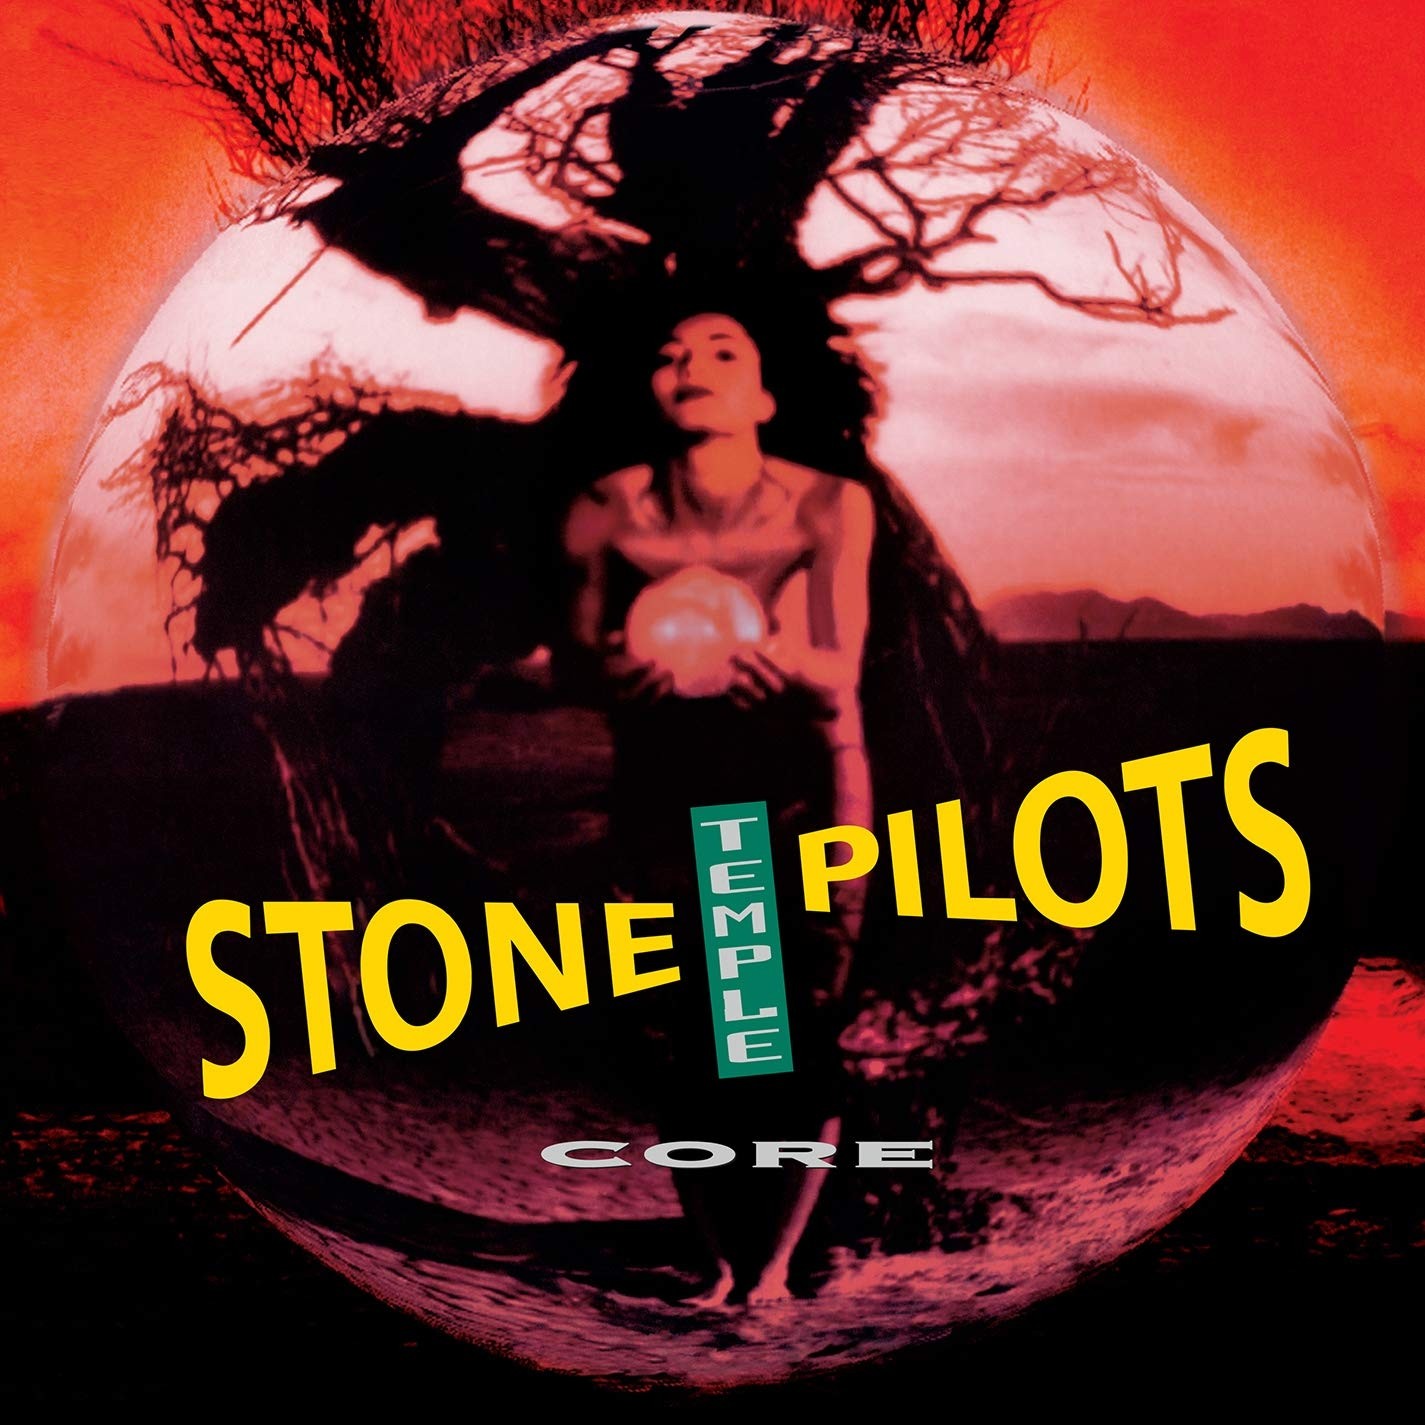 Stone Temple Pilots - Core (2017 Remaster) Vinyl LP